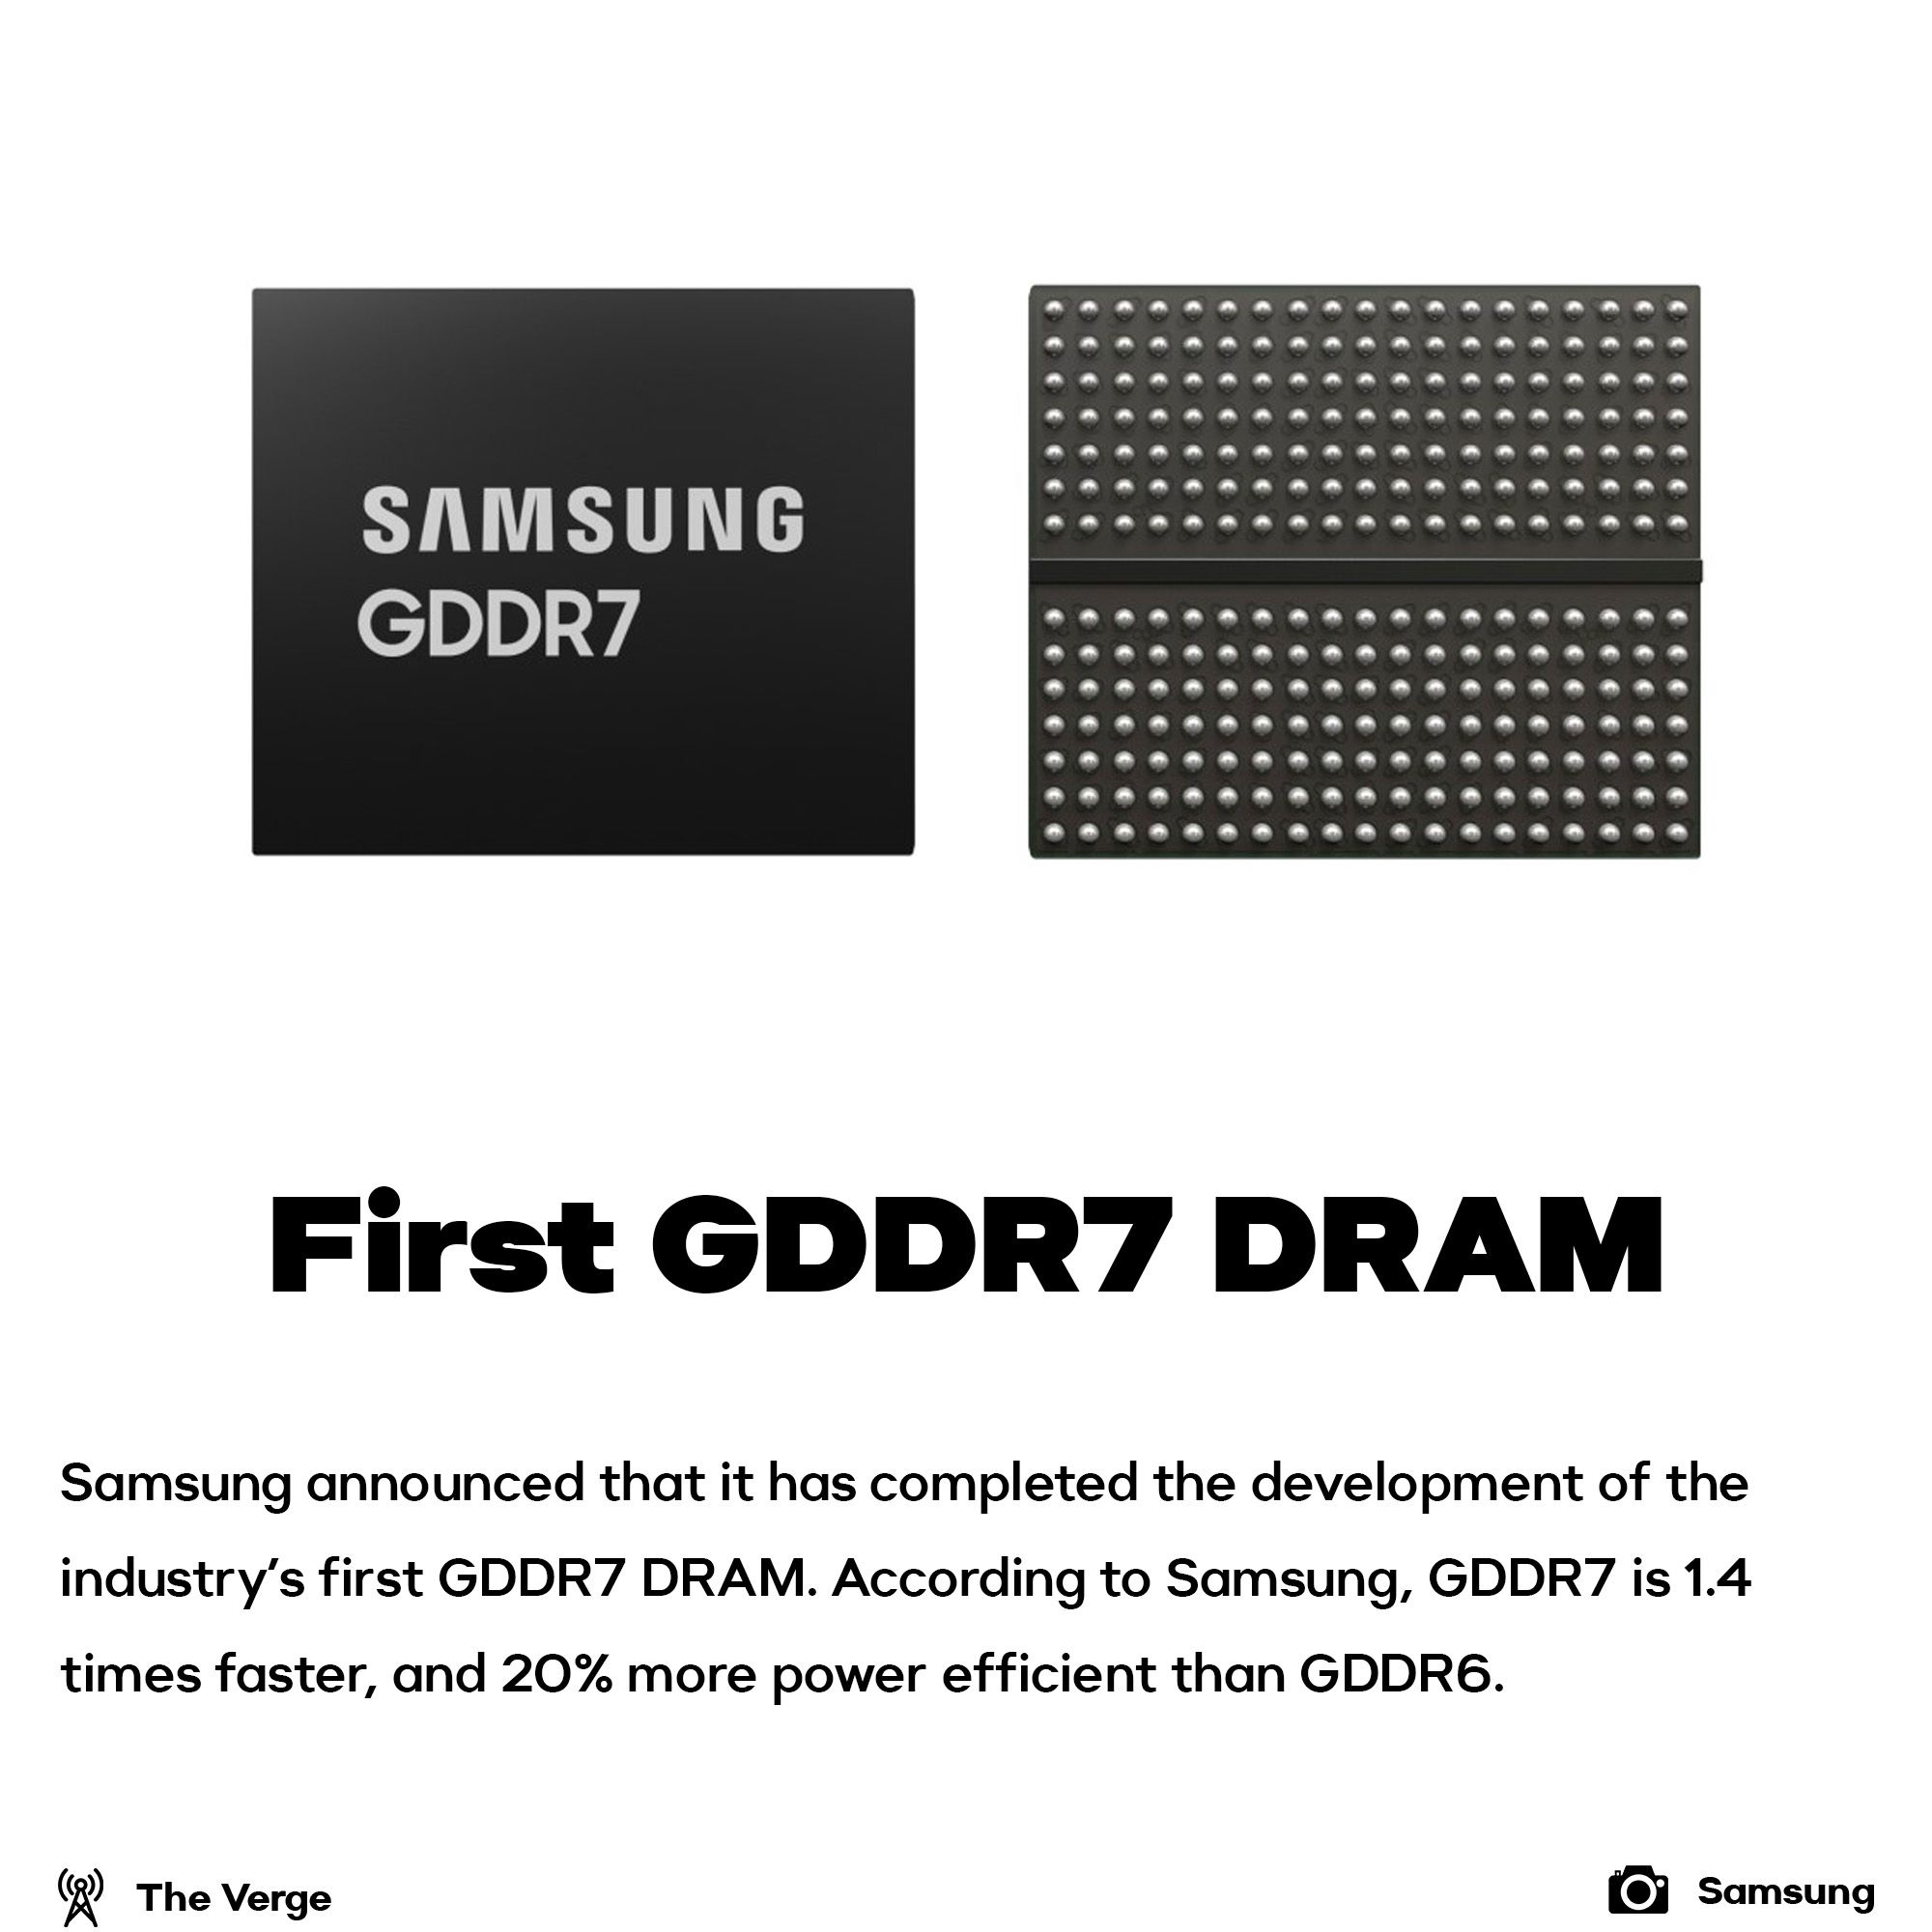 First GDDR7 RAM